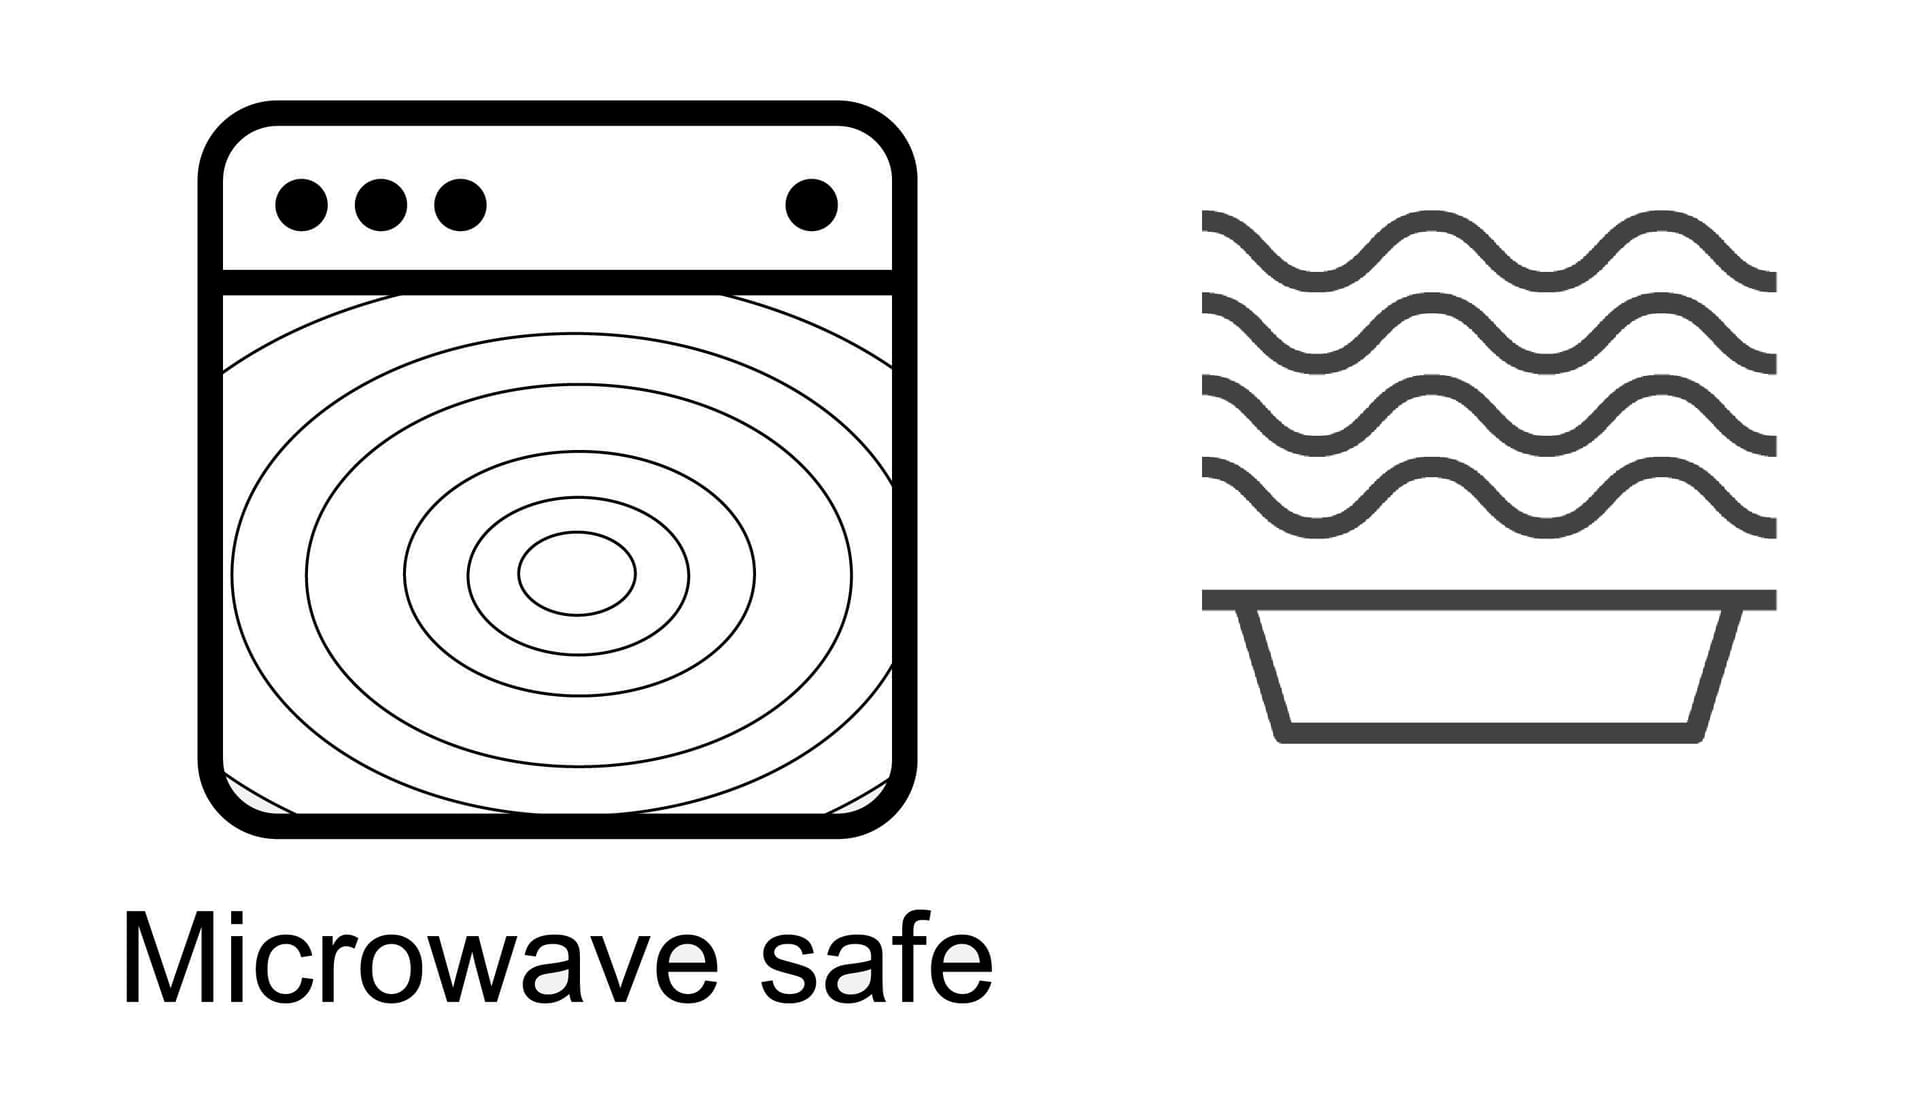 Das Symbol gibt an, dass der Gegenstand in der Mikrowelle erwärmt werden kann.